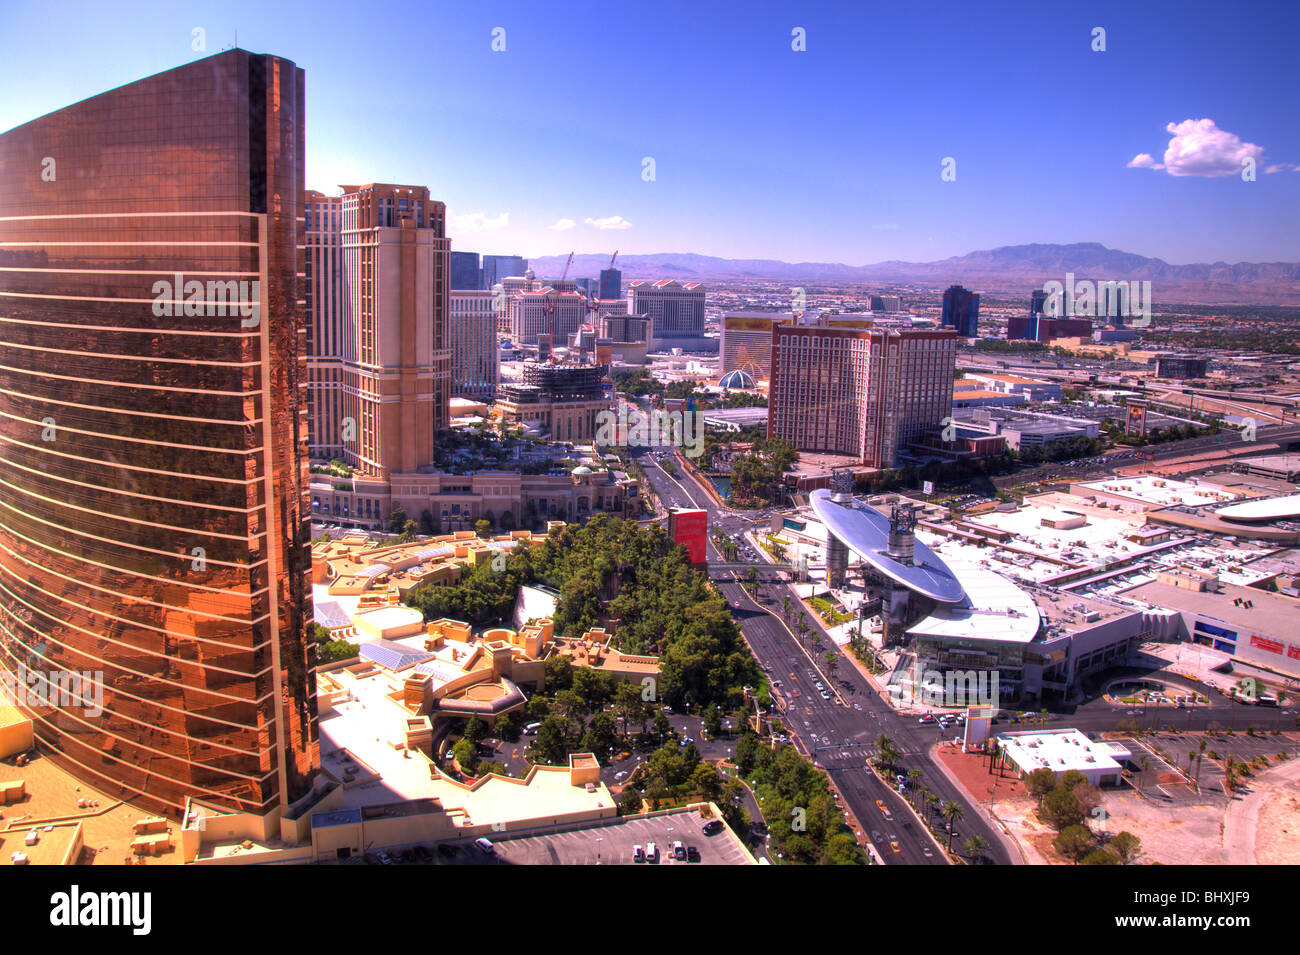 Image délibérément tourné de Las Vegas Strip, du Nord, à la recherche du Sud. Logo ont été supprimés. Banque D'Images